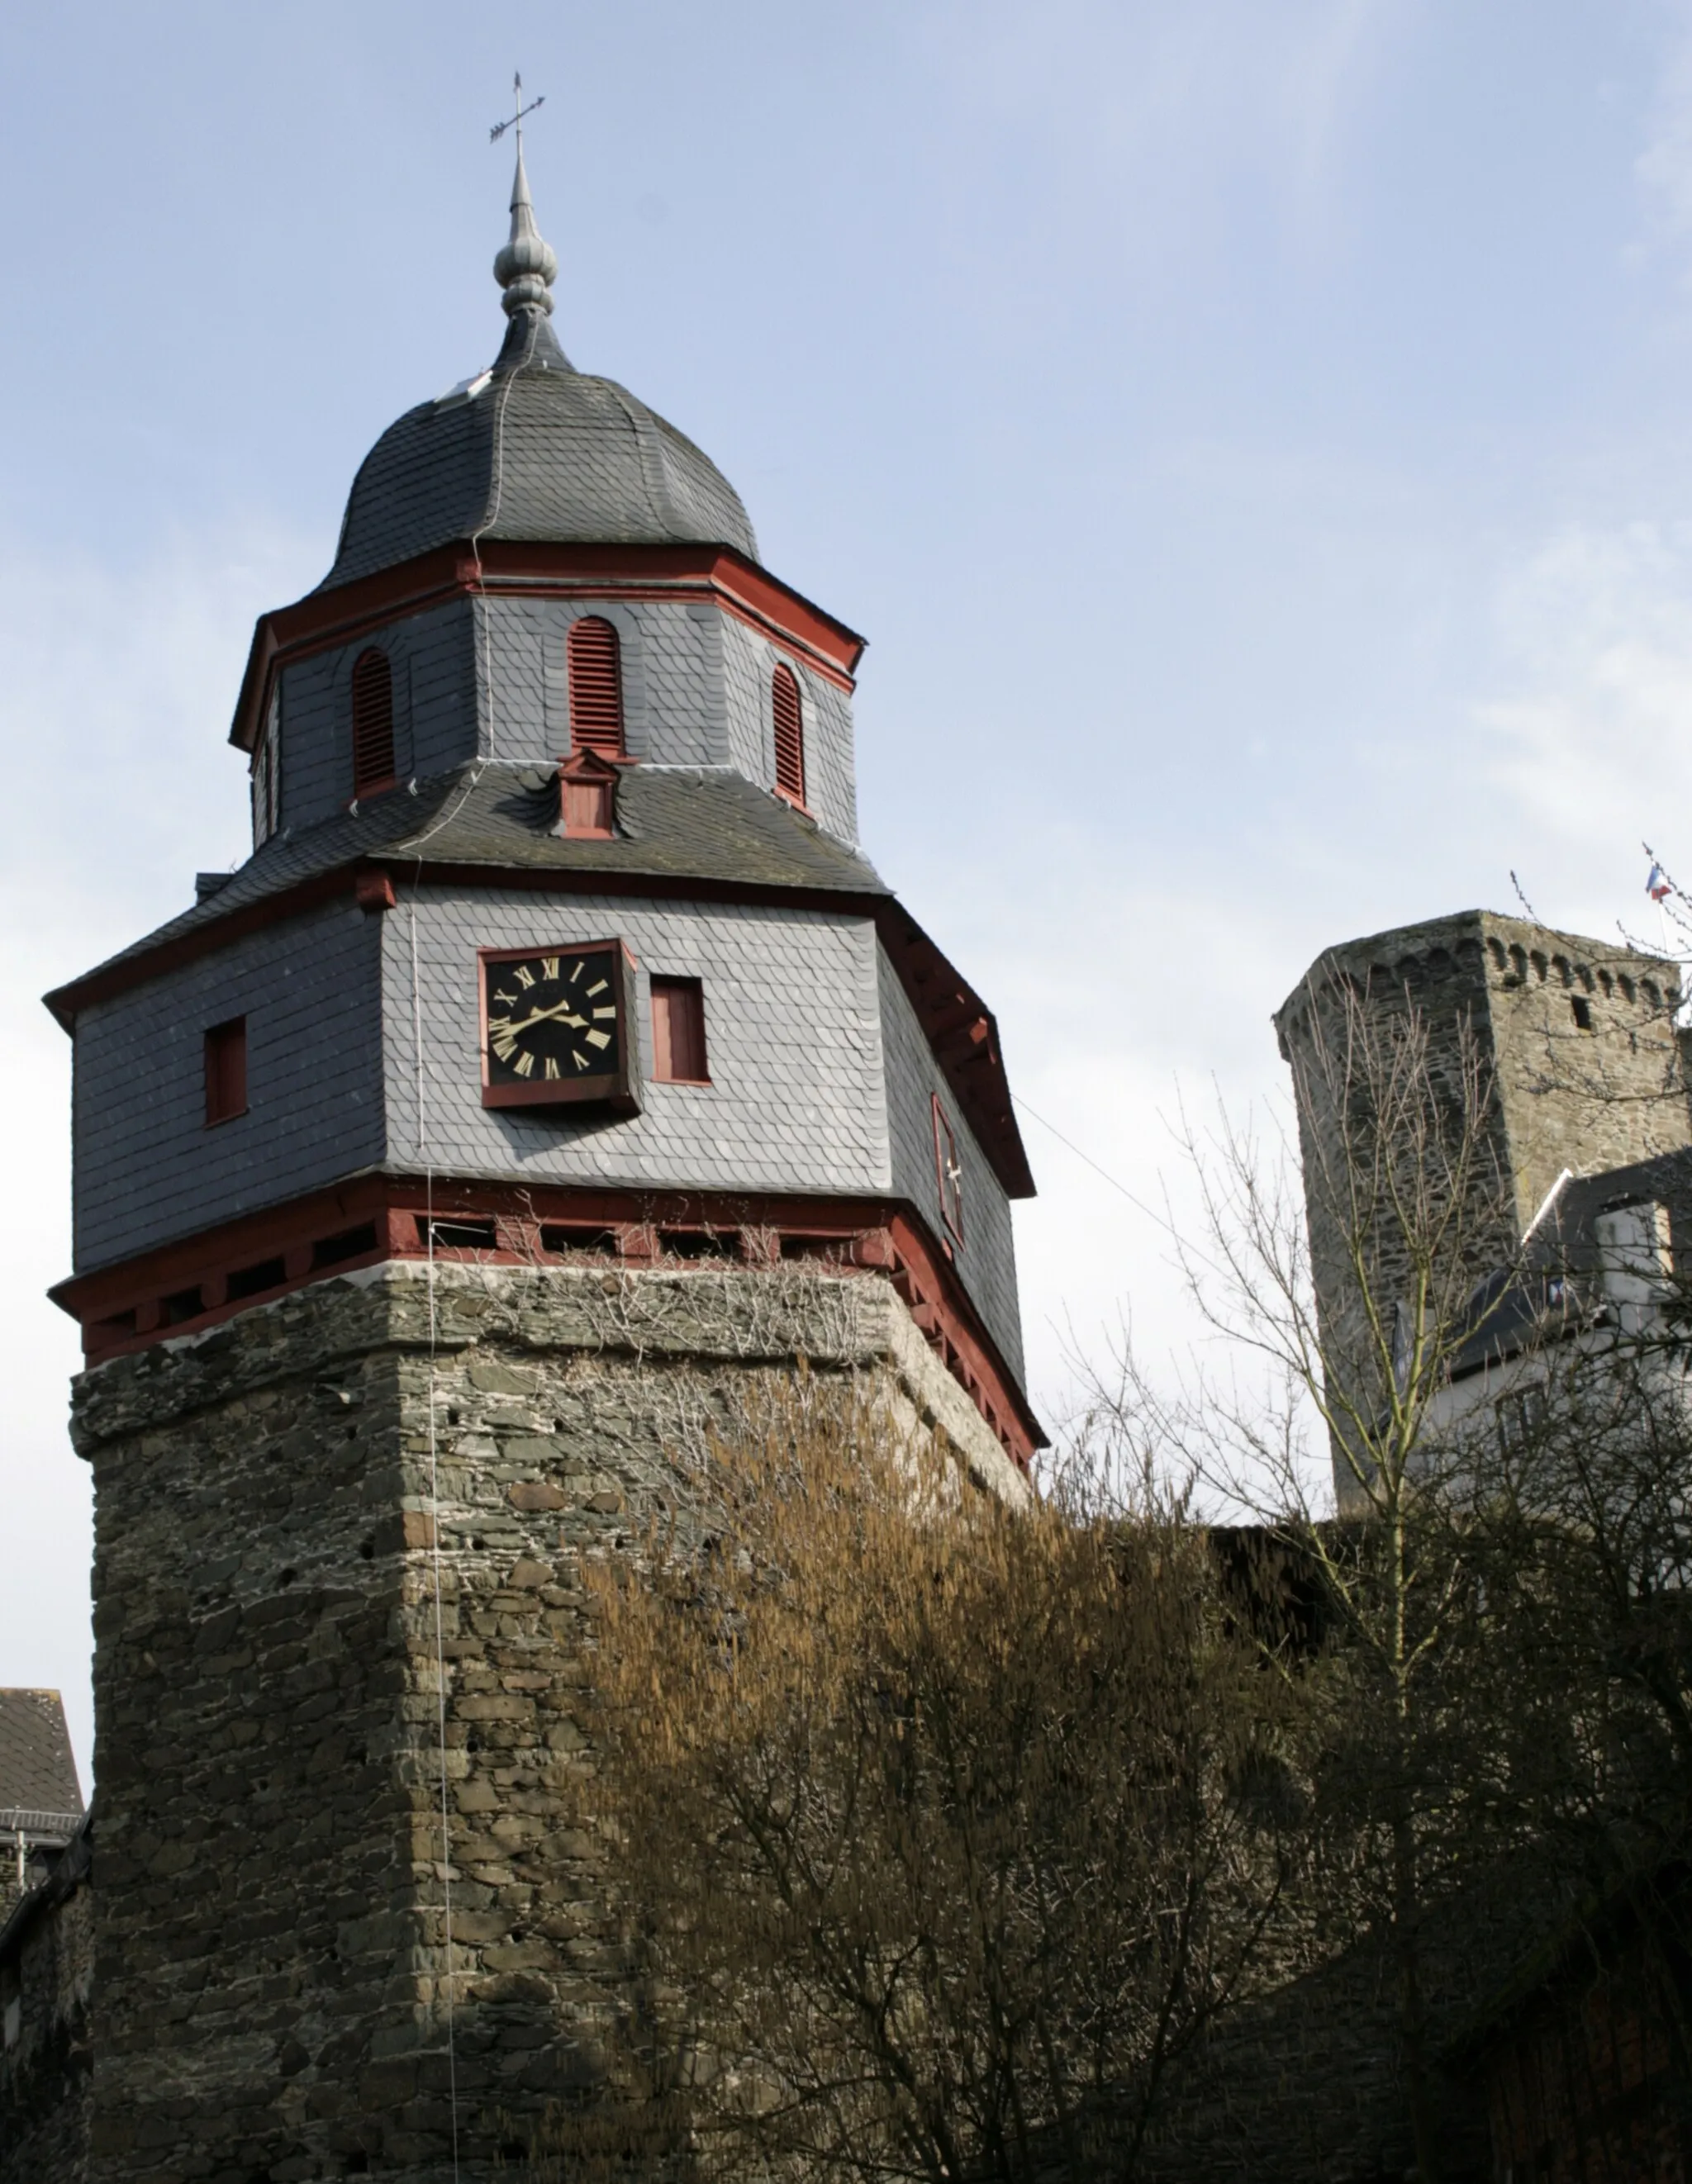 Image of Gießen